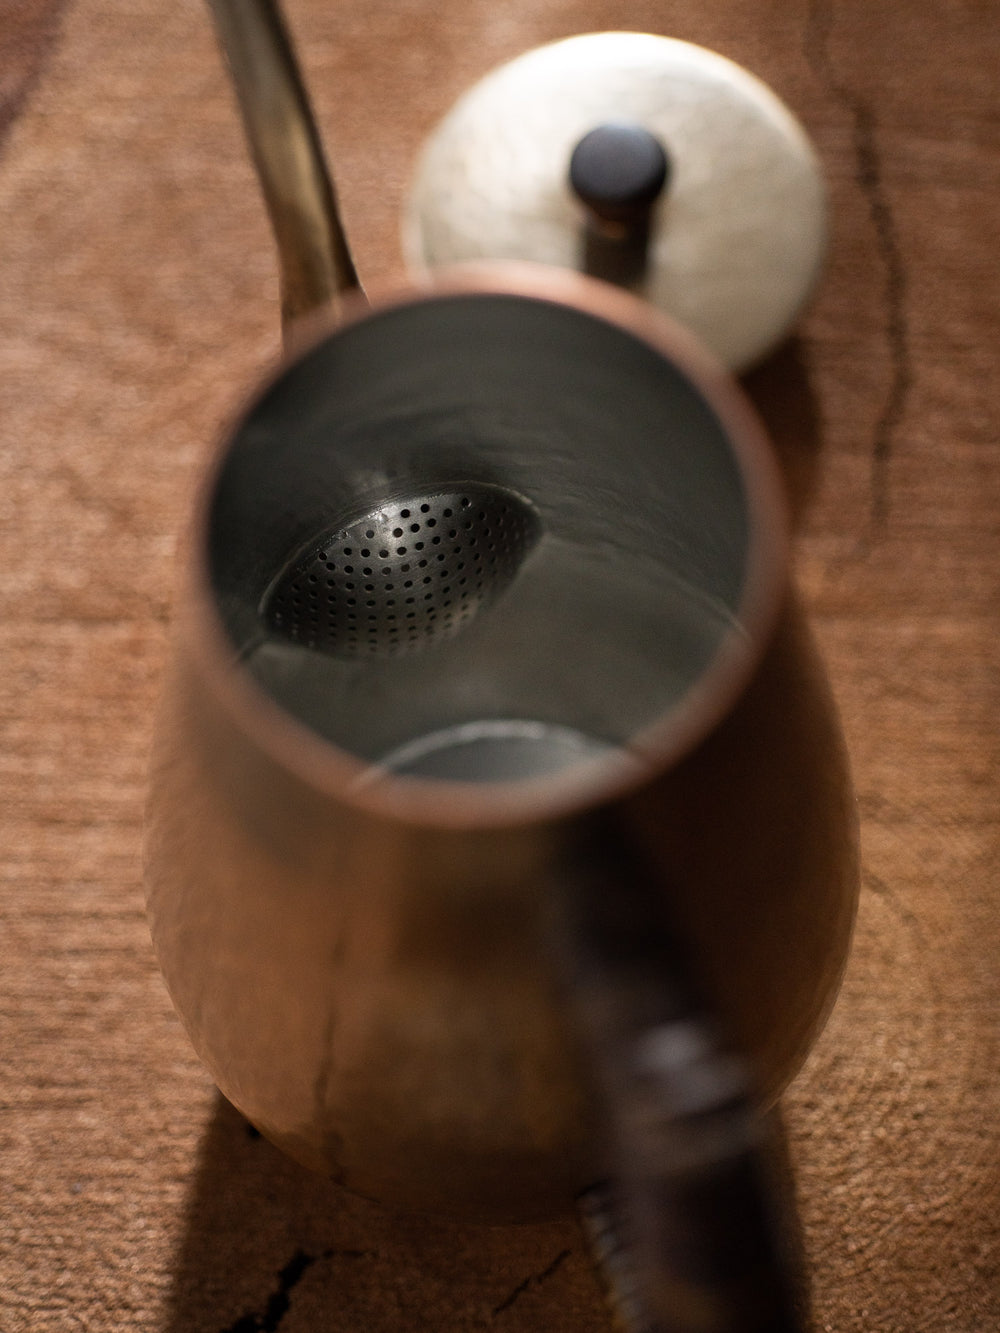 Copper Coffee Pot 0.7 L